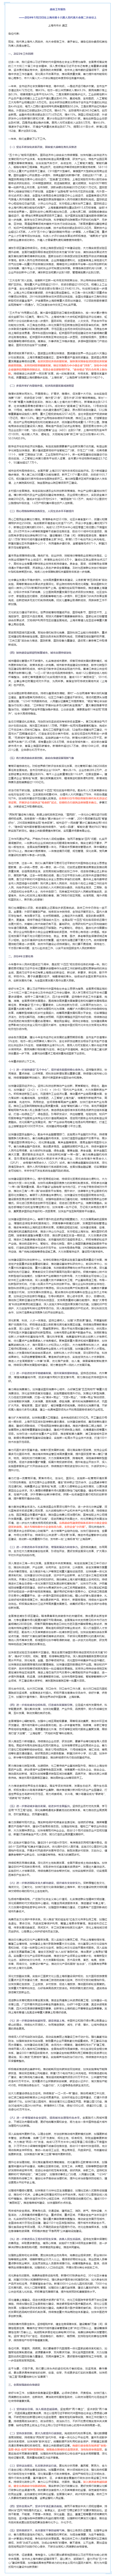 【要闻】龚正市长在上海市第十六届人民代表大会第二次会议上作政府工作报告.png